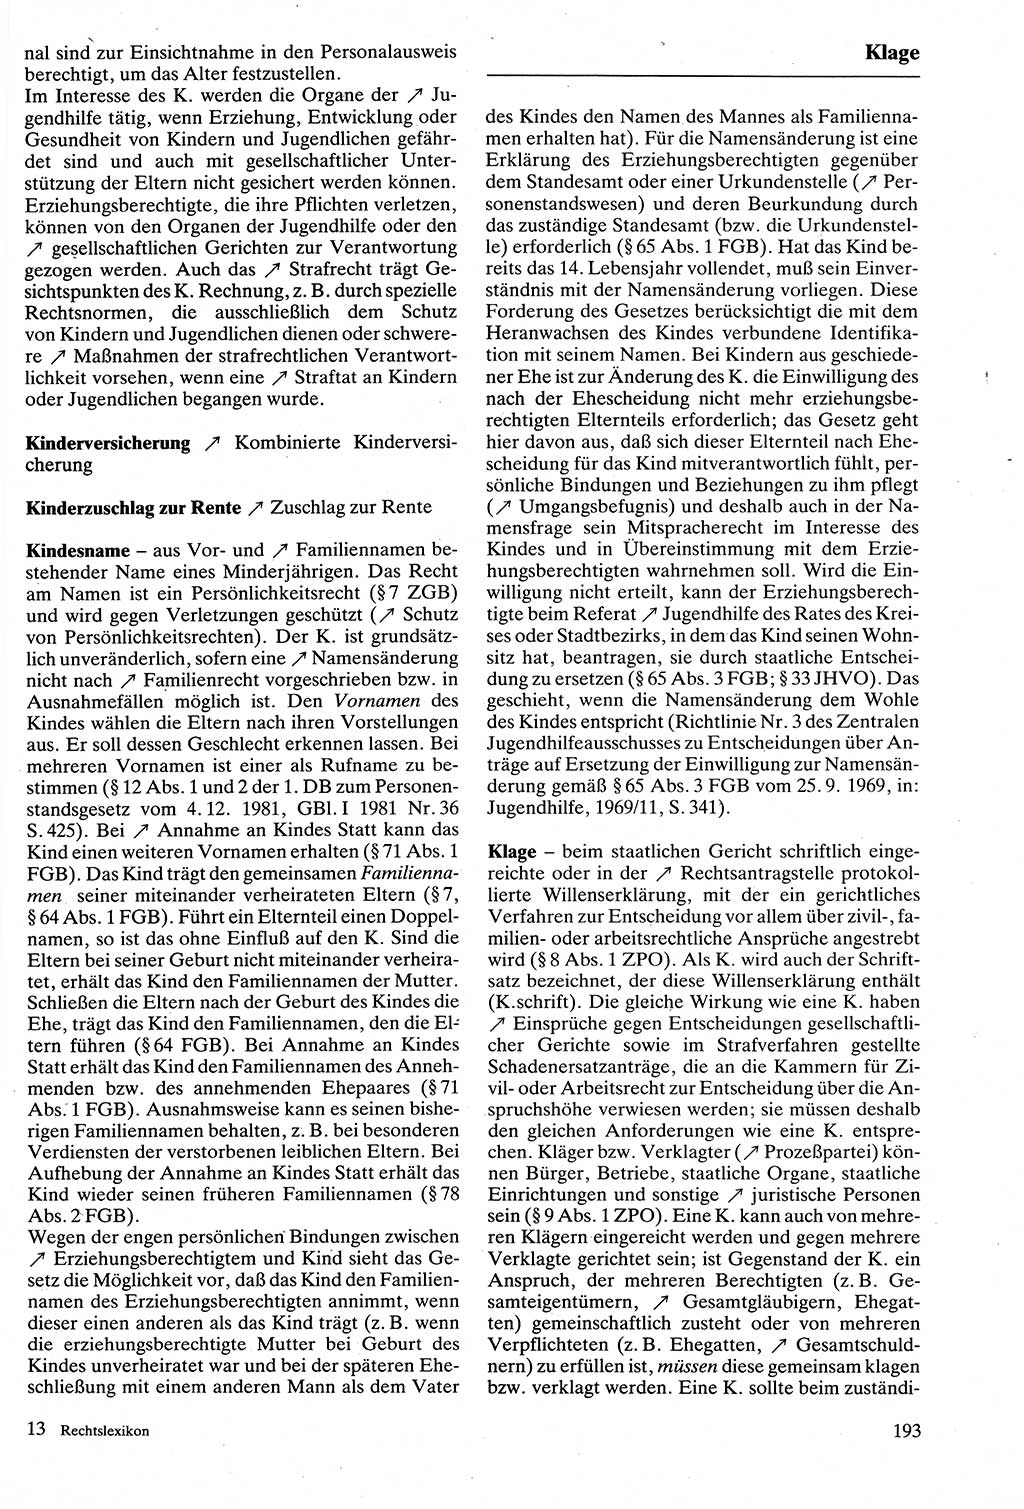 Rechtslexikon [Deutsche Demokratische Republik (DDR)] 1988, Seite 193 (Rechtslex. DDR 1988, S. 193)